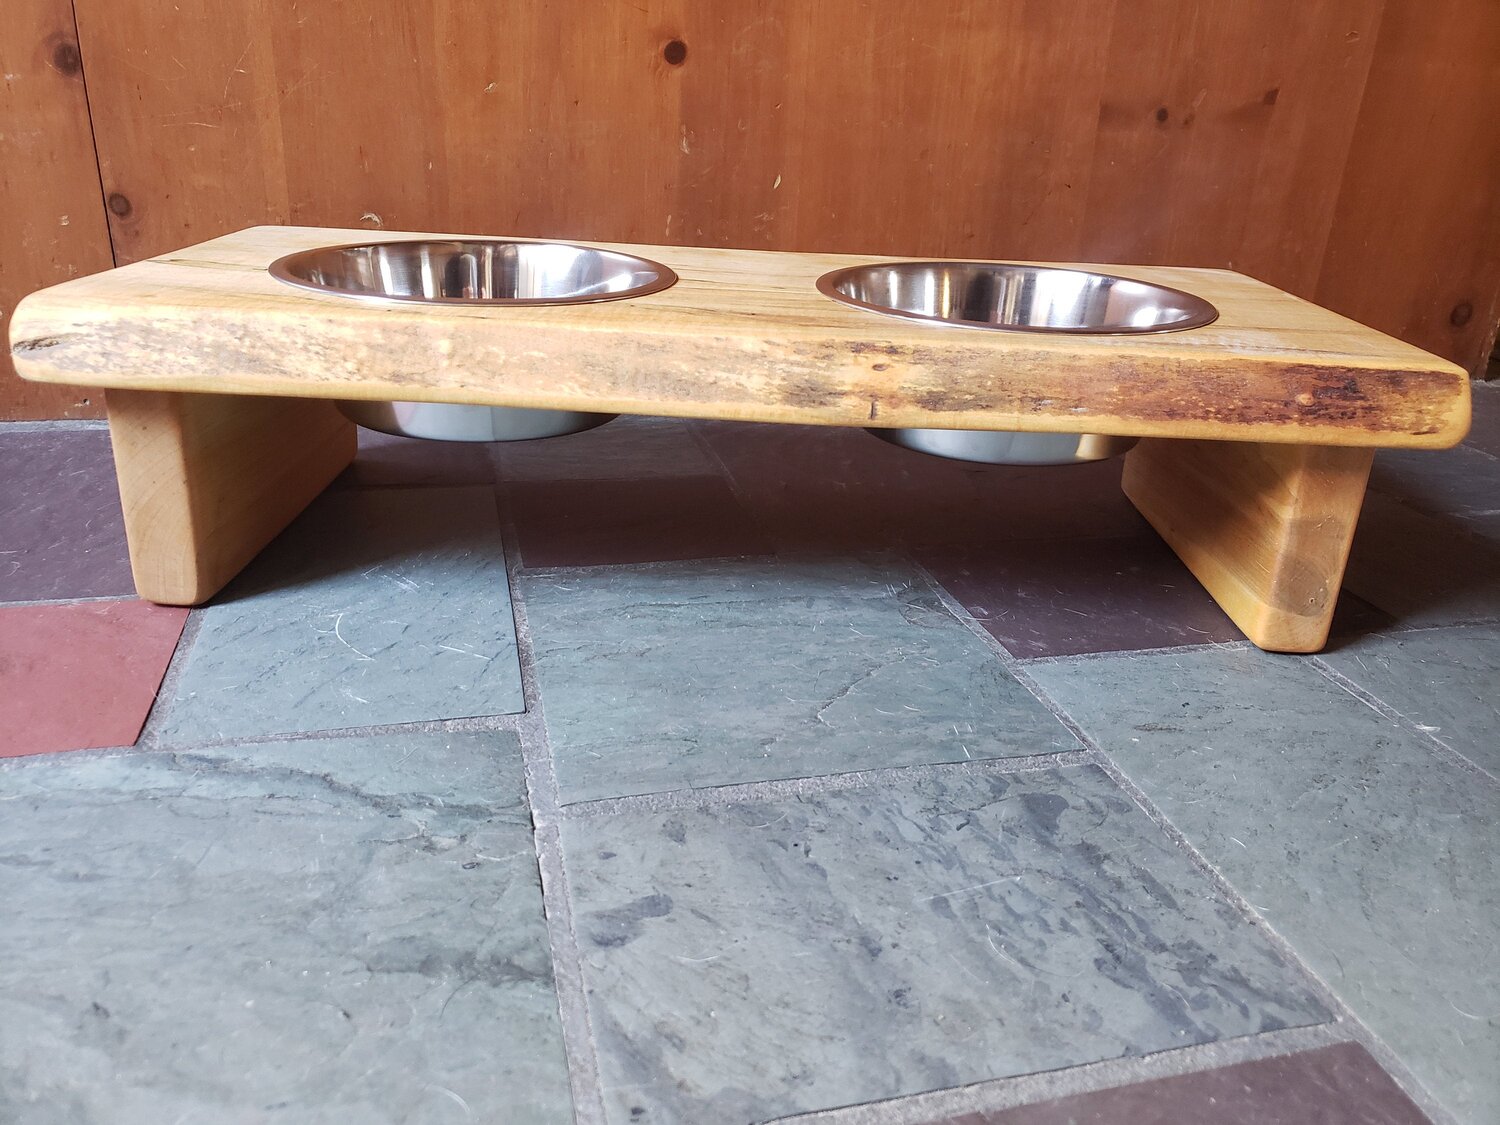 Large Dog Dish Holder, Wood Dog Feeder With Bowls